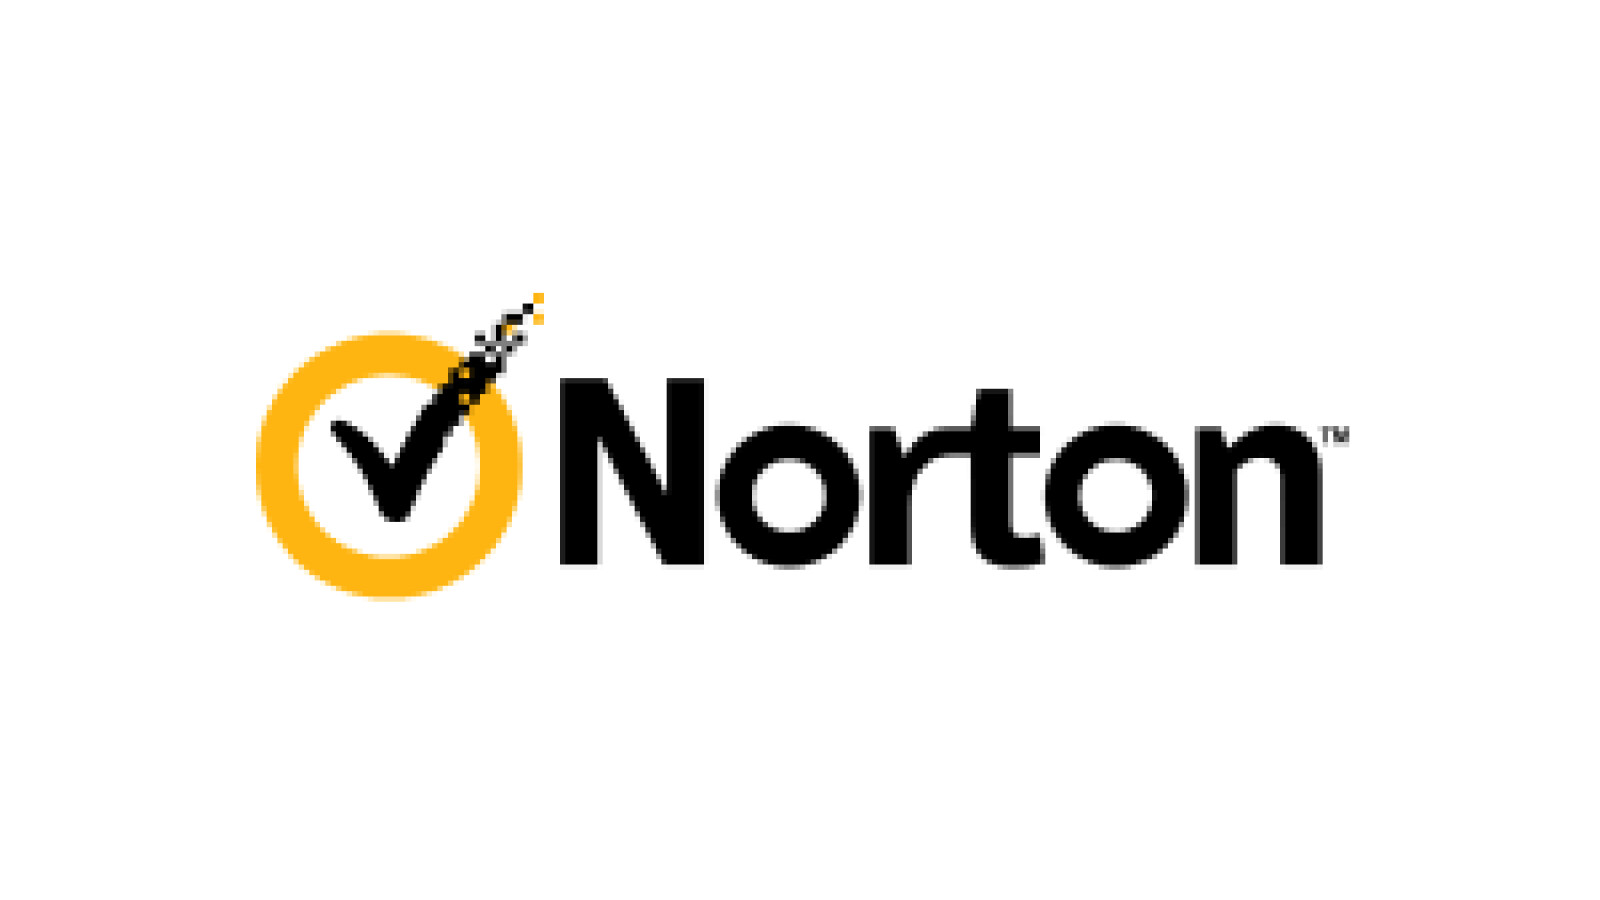 norton utilities premium download